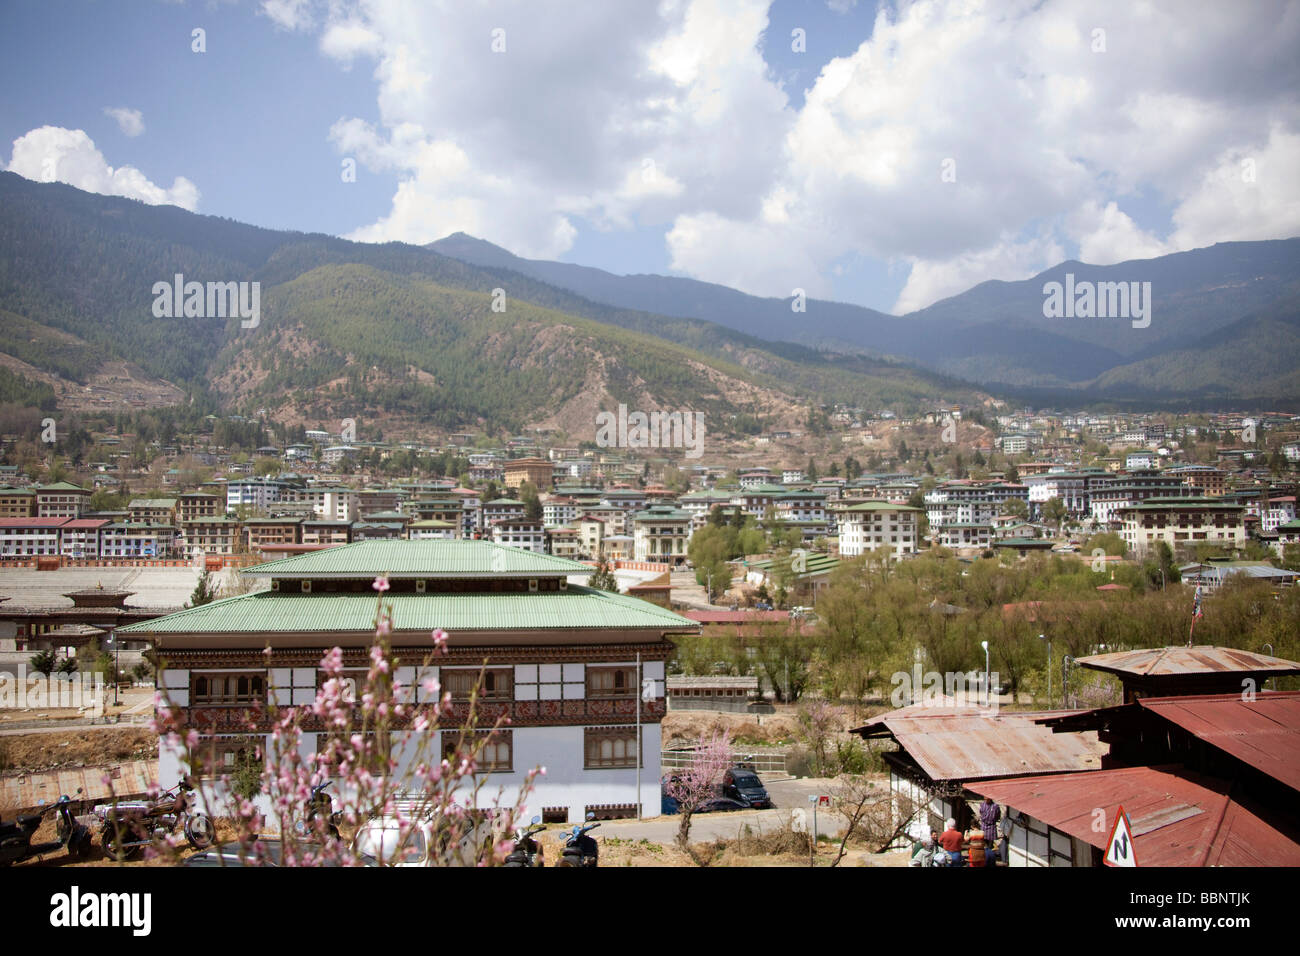 Gesamtansicht von Thimphu Hauptstadt Bhutans, sonnigen Frühlingstag, begrünte Dächer townscape.91051 Bhutan-Thimphu Stockfoto